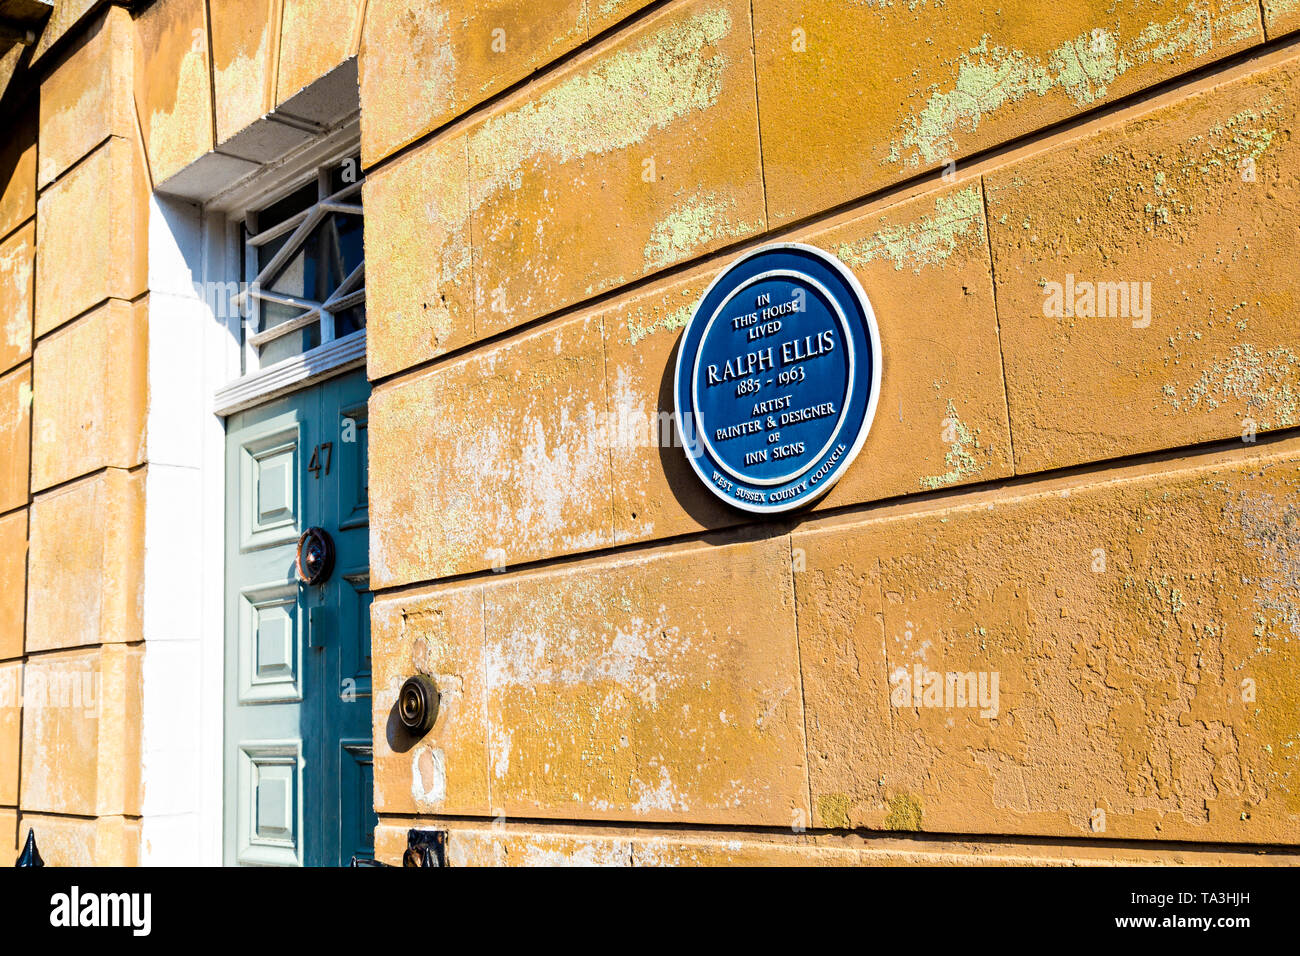 Targa blu per Ralph Ellis, artista pittore e disegnatore, che visse in questa casa, Maltravers Street, Arundel, REGNO UNITO Foto Stock